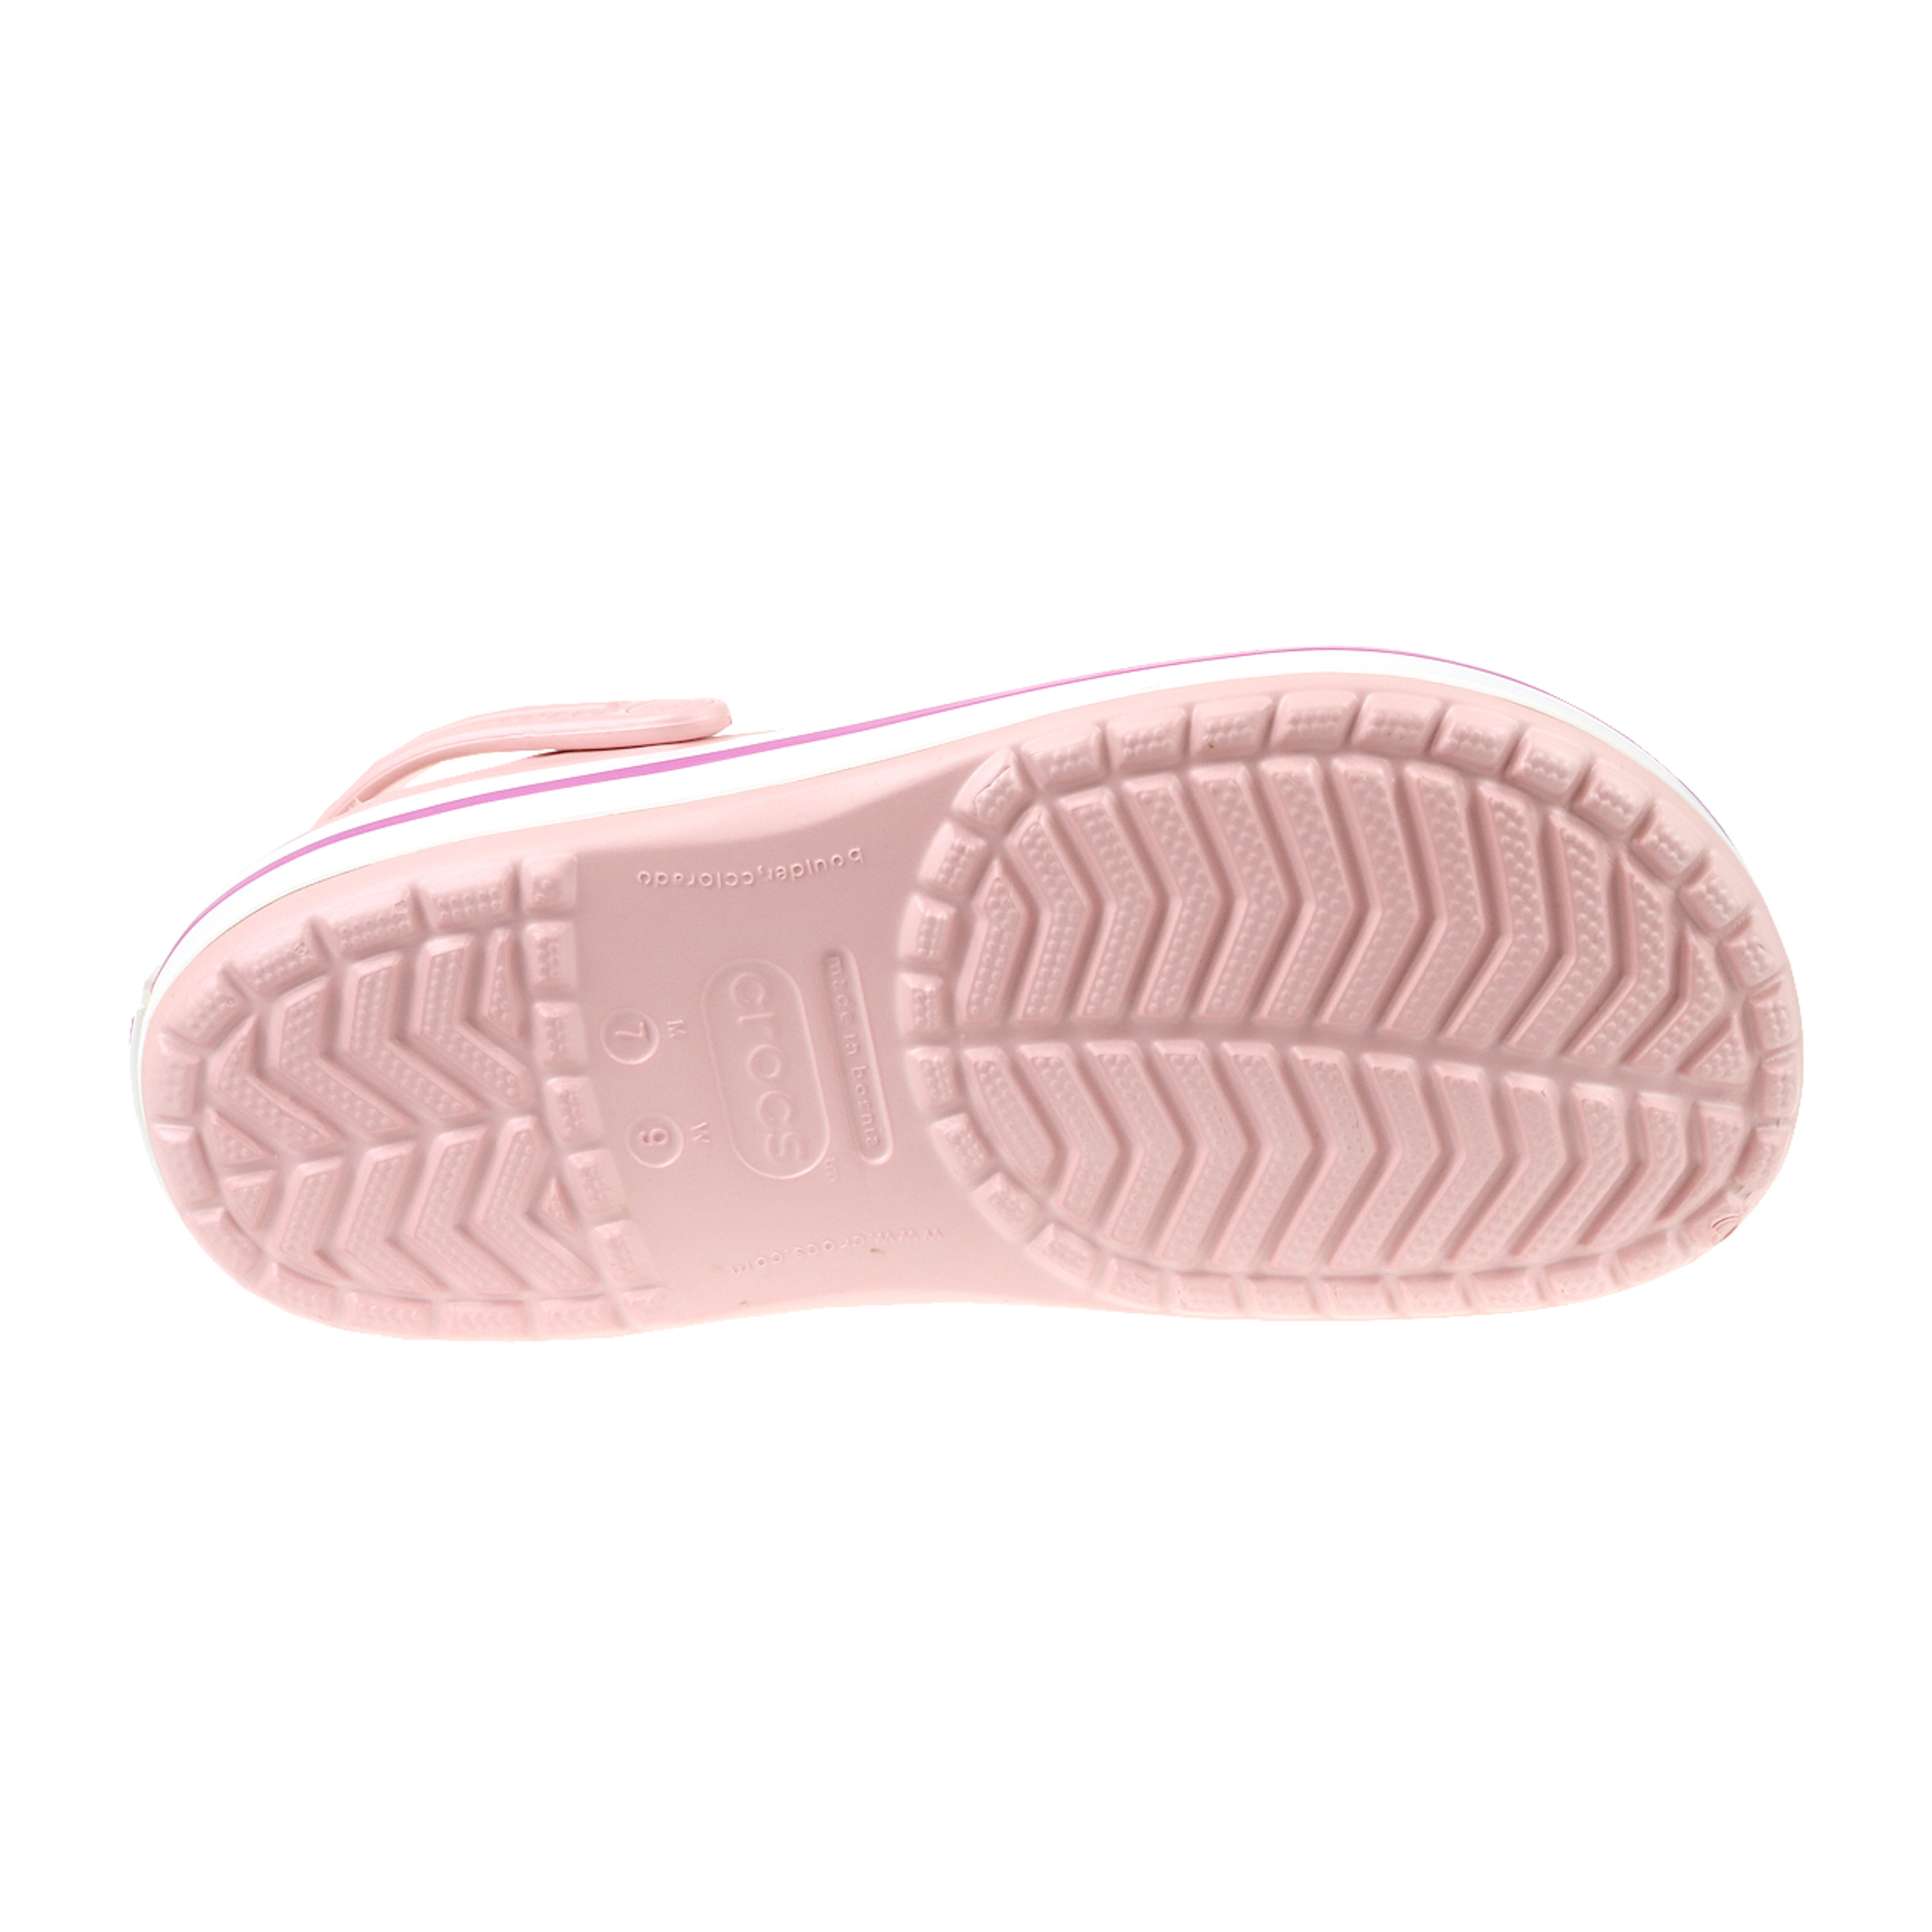 Crocs Crocband 11016-6mb - Rosa - Mujer, Rosa, Zapatillas  MKP